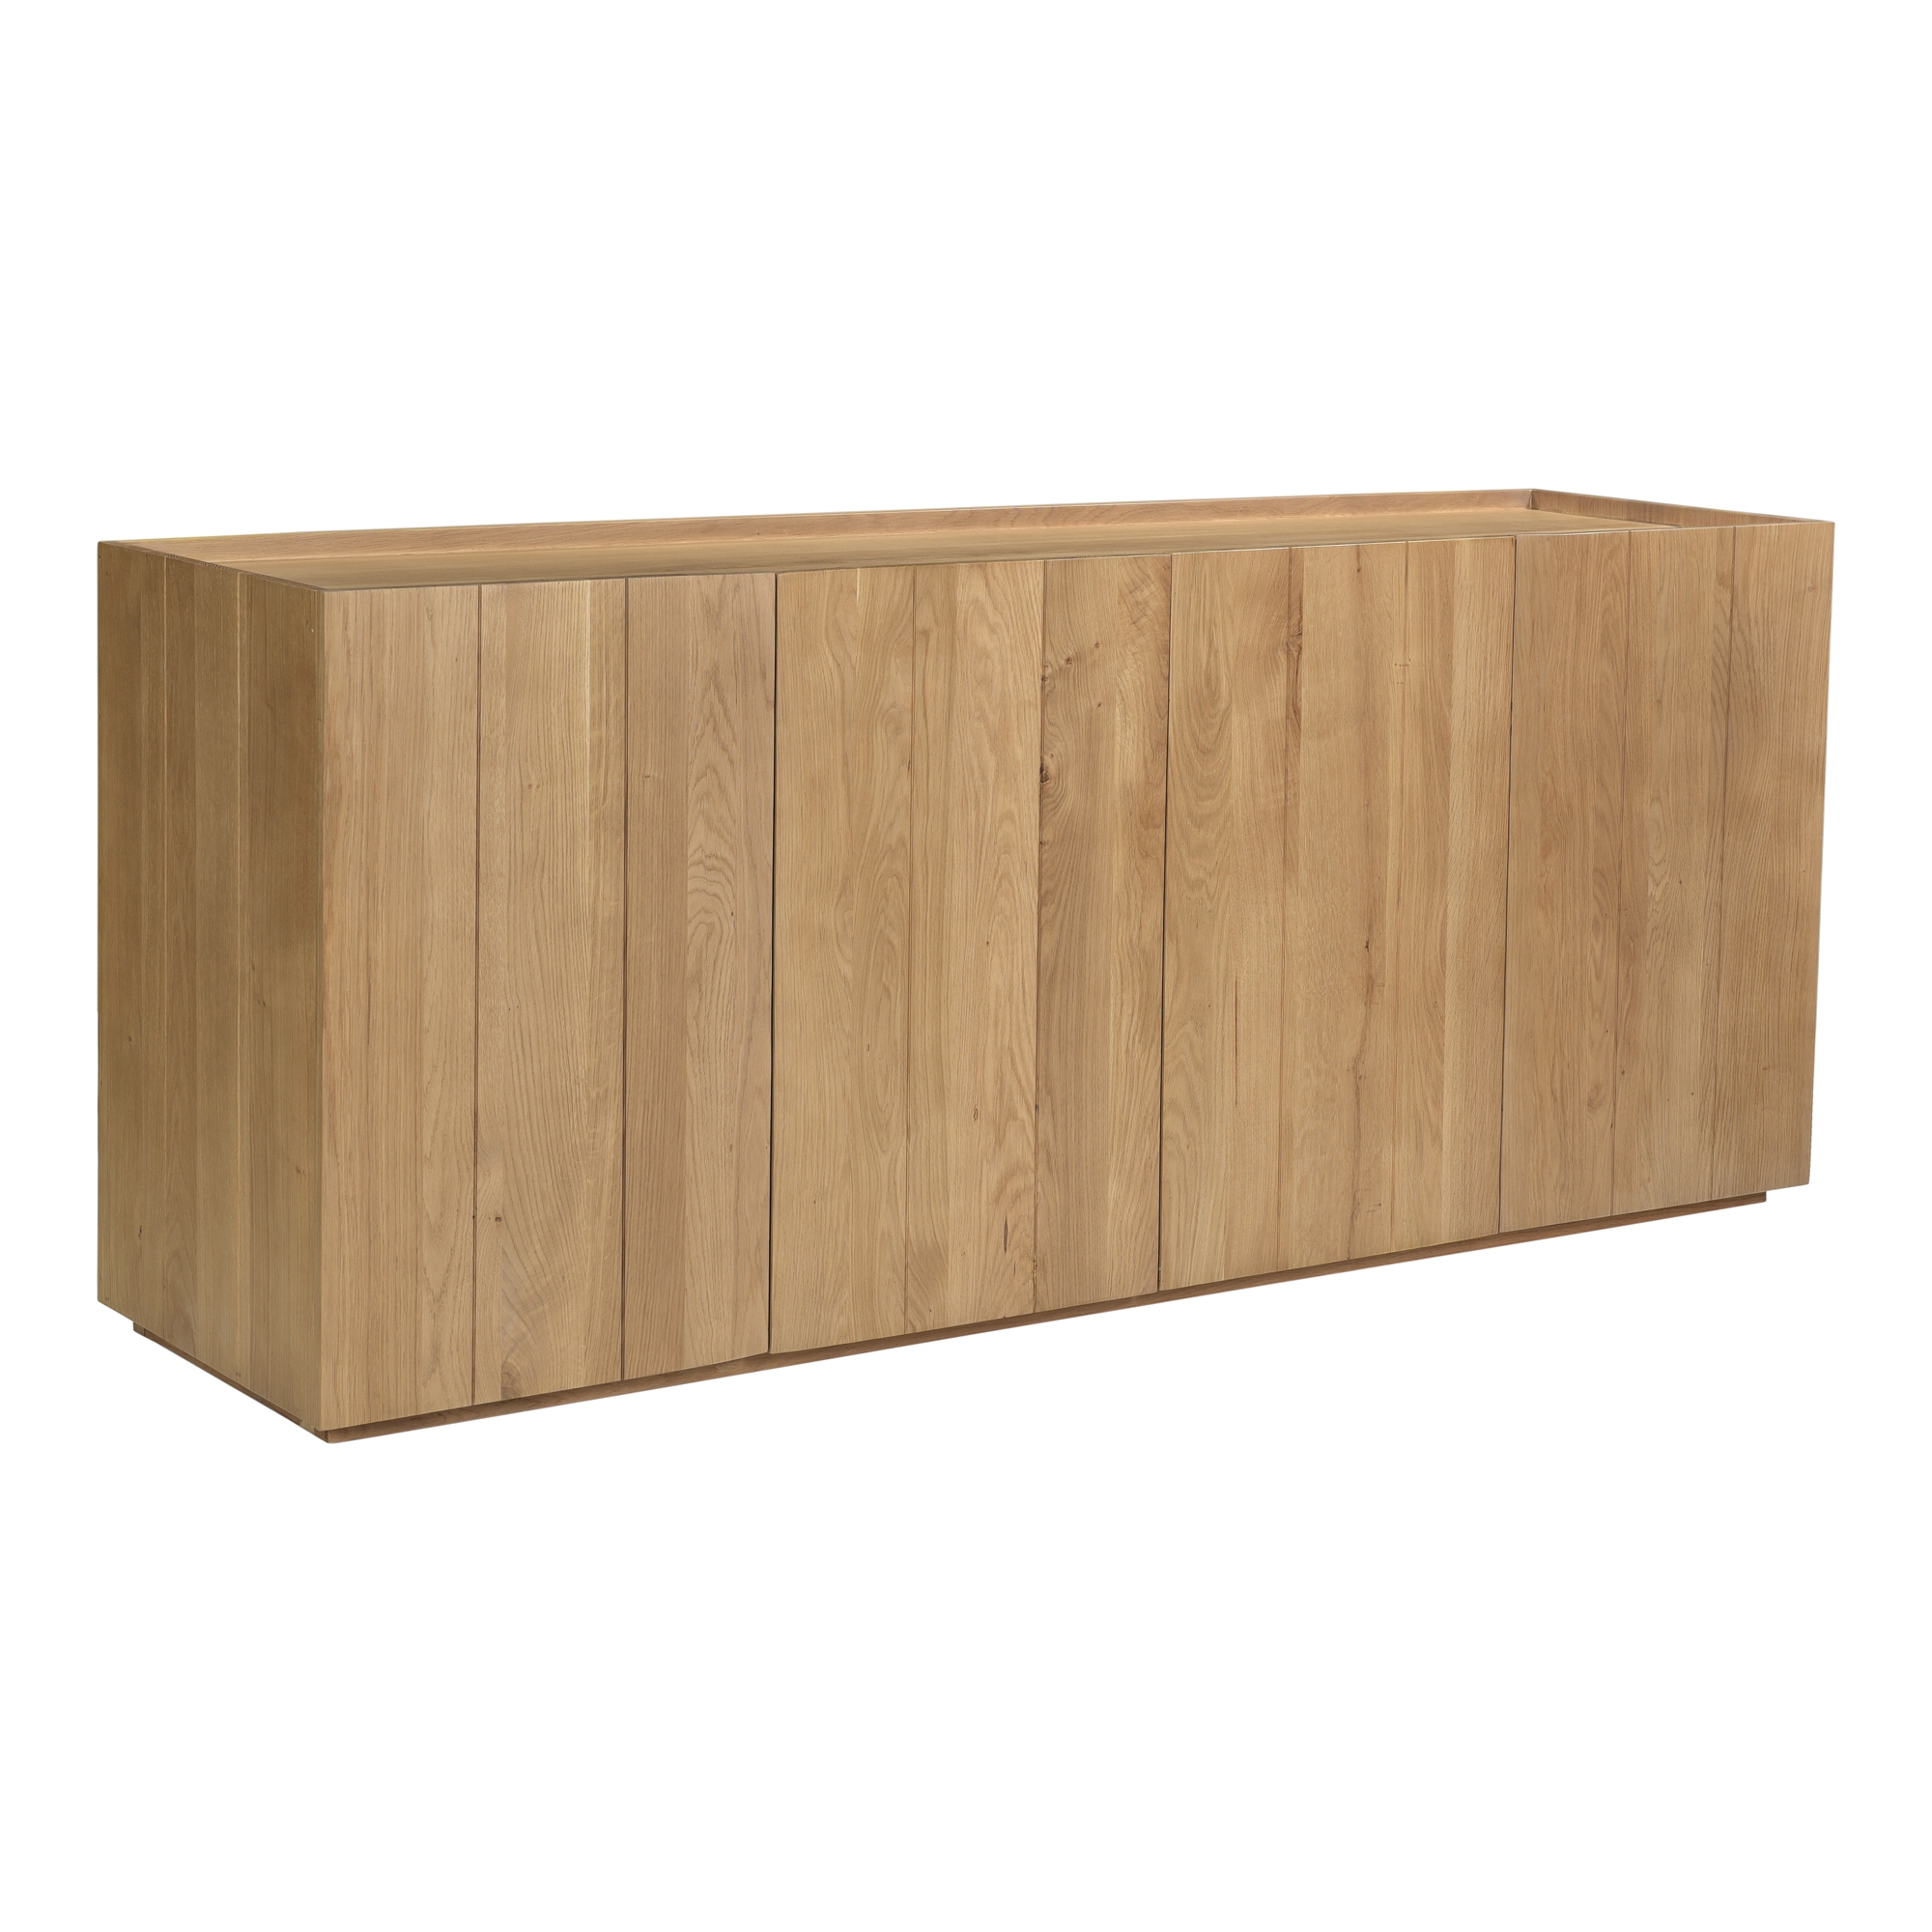 Plank Sideboard - Image 1